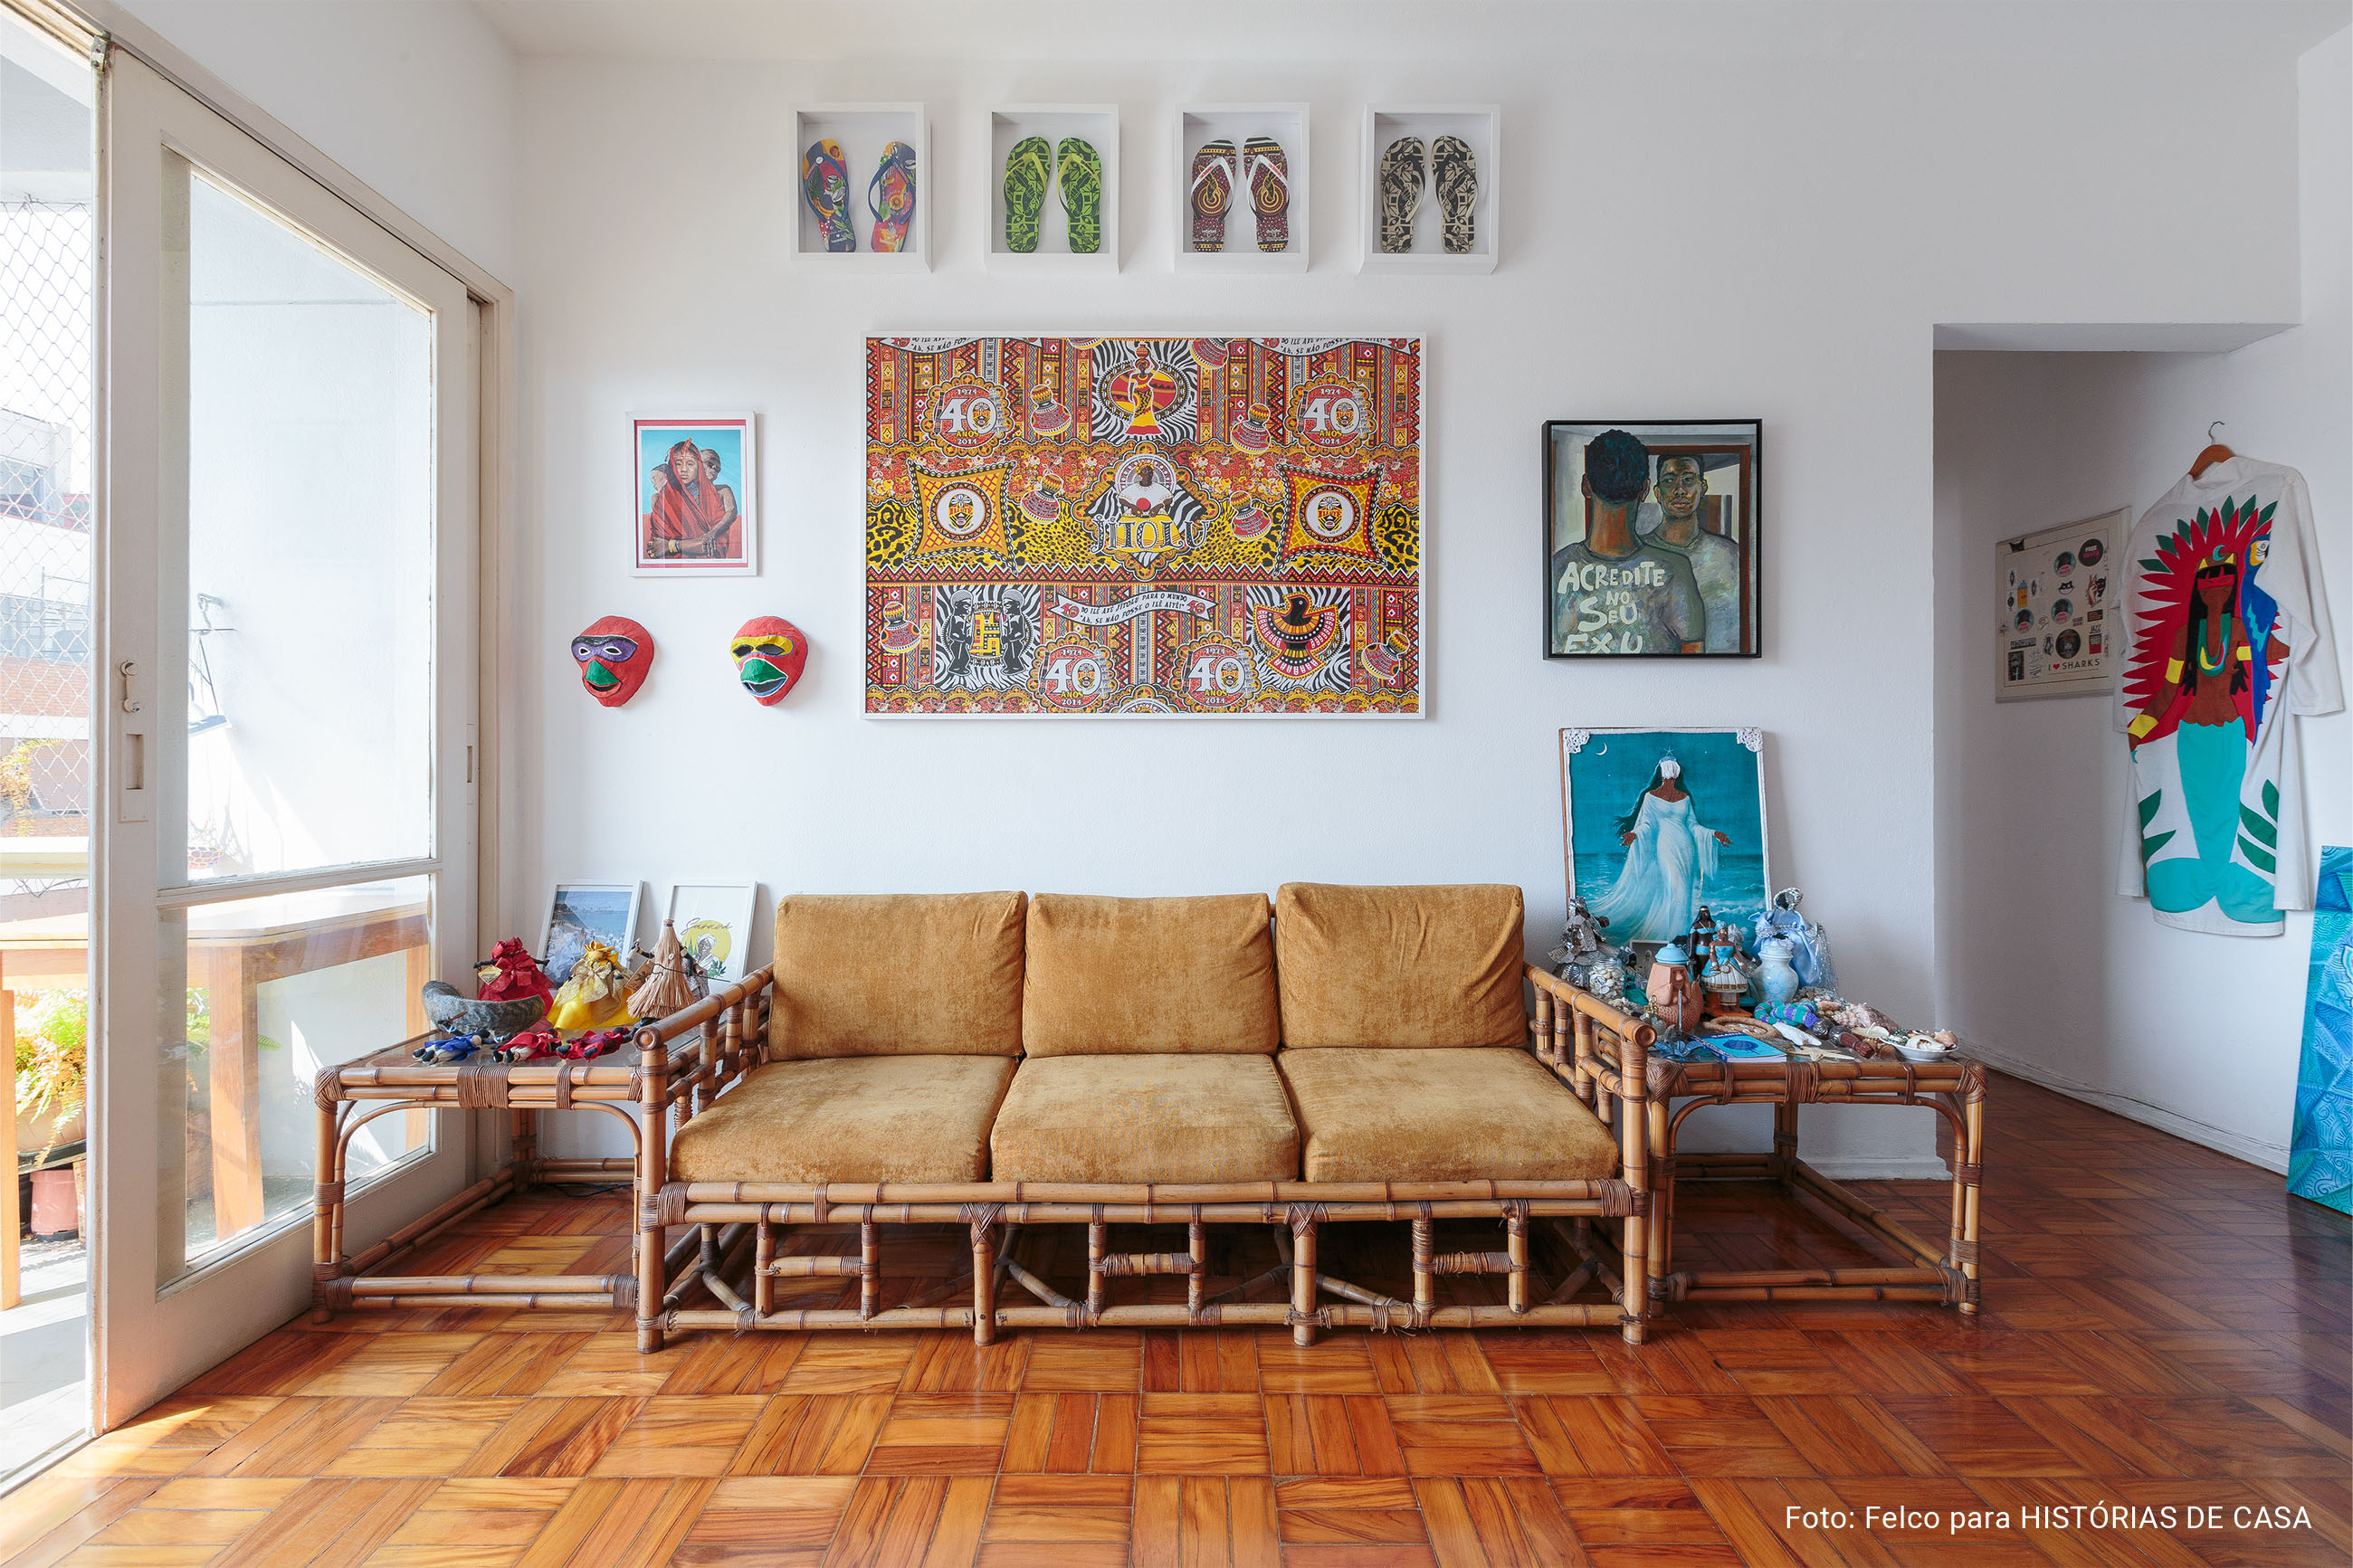 Apartamento alugado com paredes coloridas e decoração afrobrasileira.